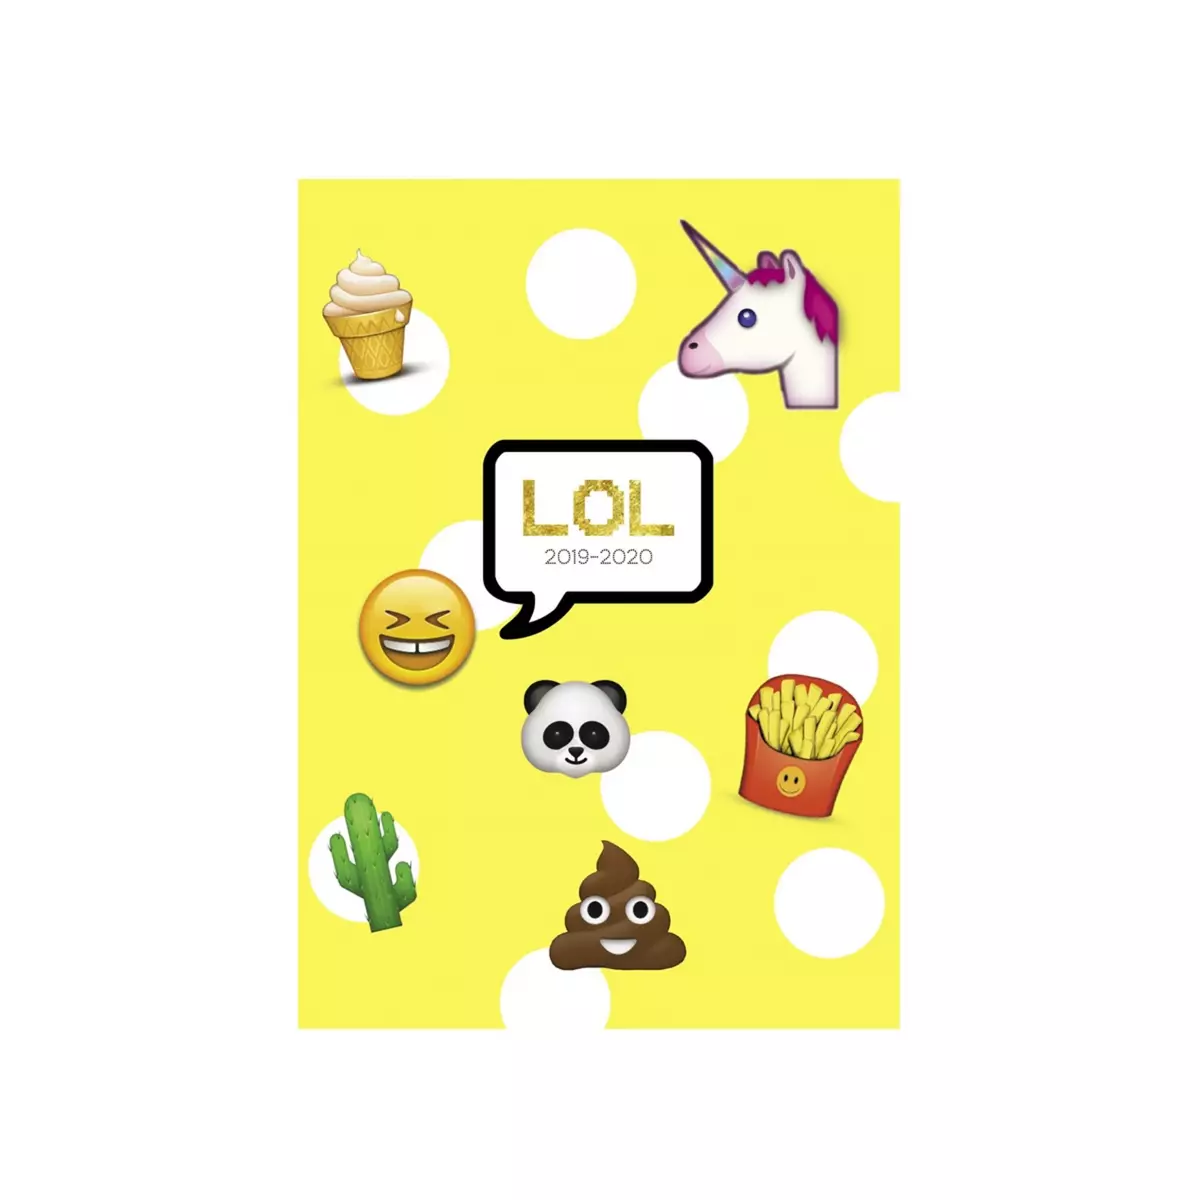  Agenda scolaire journalier fille 12,5x17,5cm - couverture rigide - Emoji Fun 2019-2020